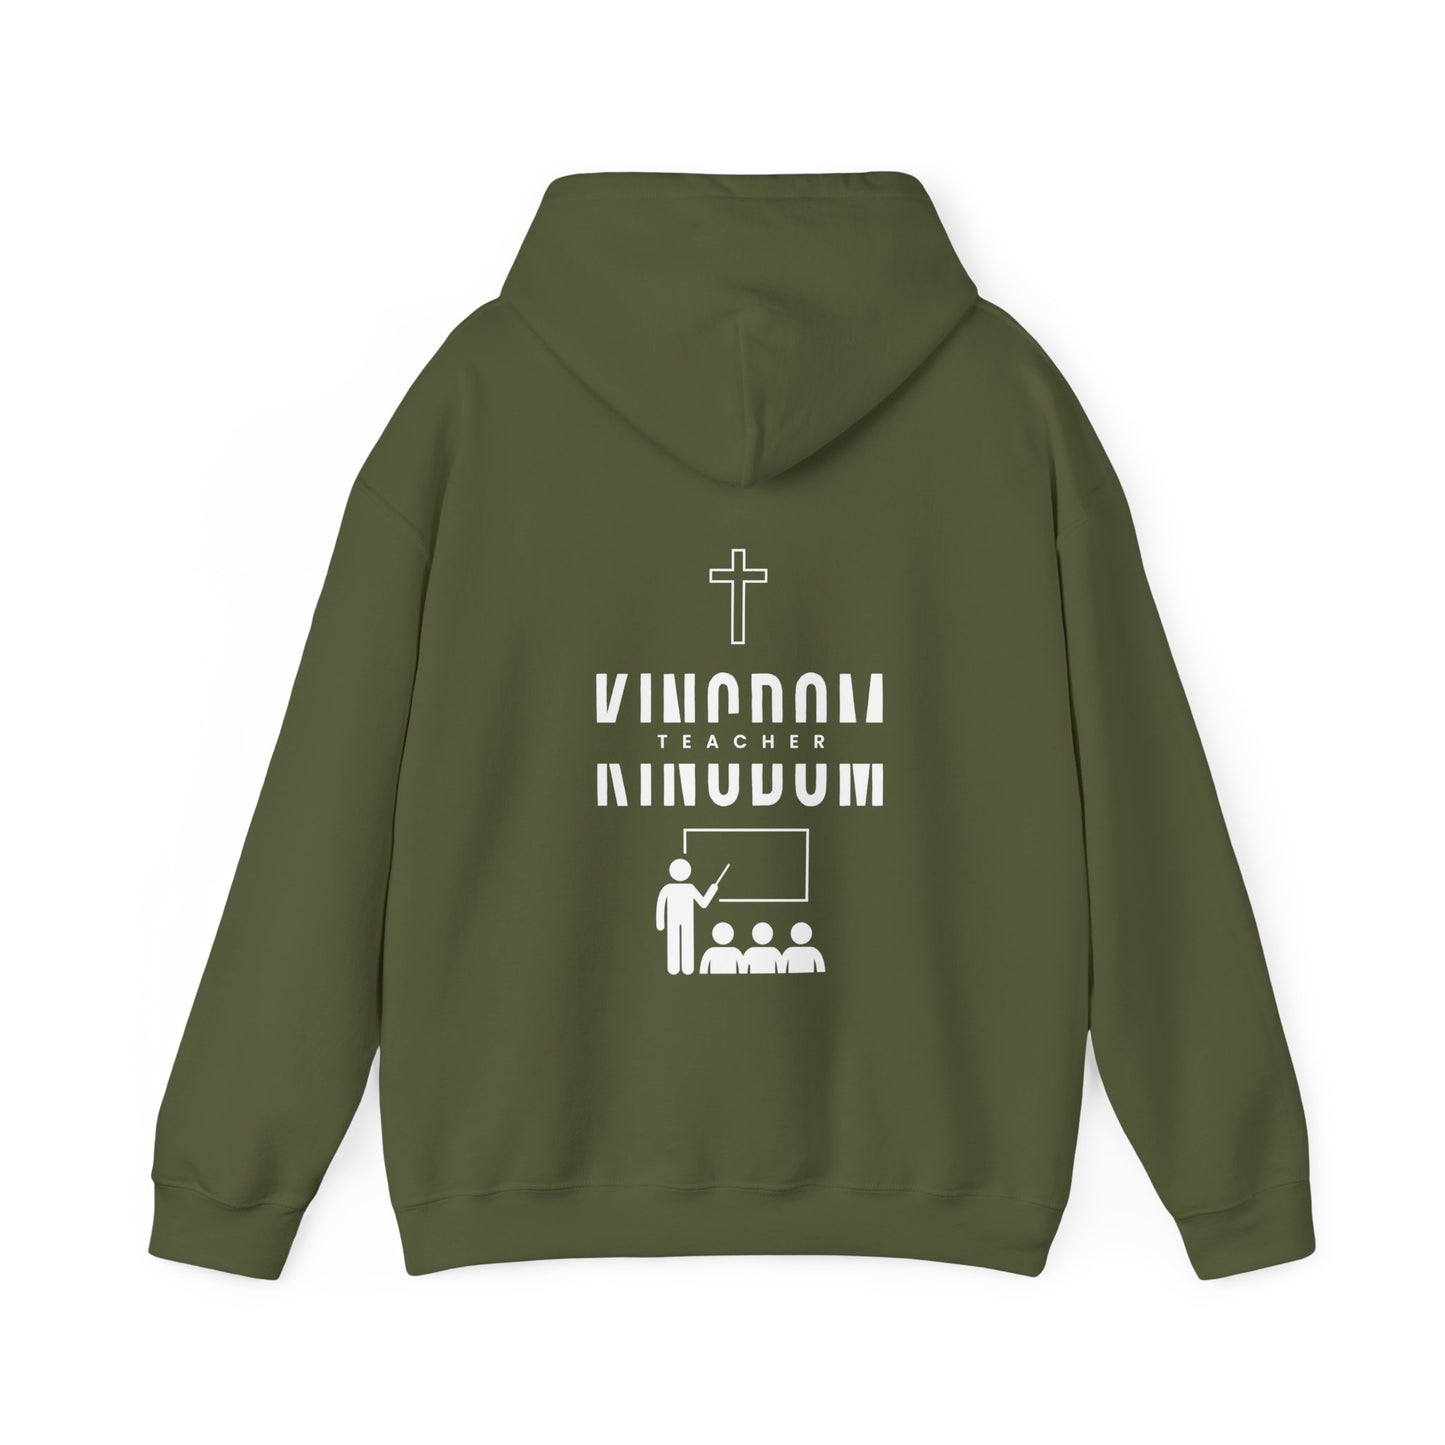 KINGDOM TEACHER MANDATE Hooded Sweatshirt